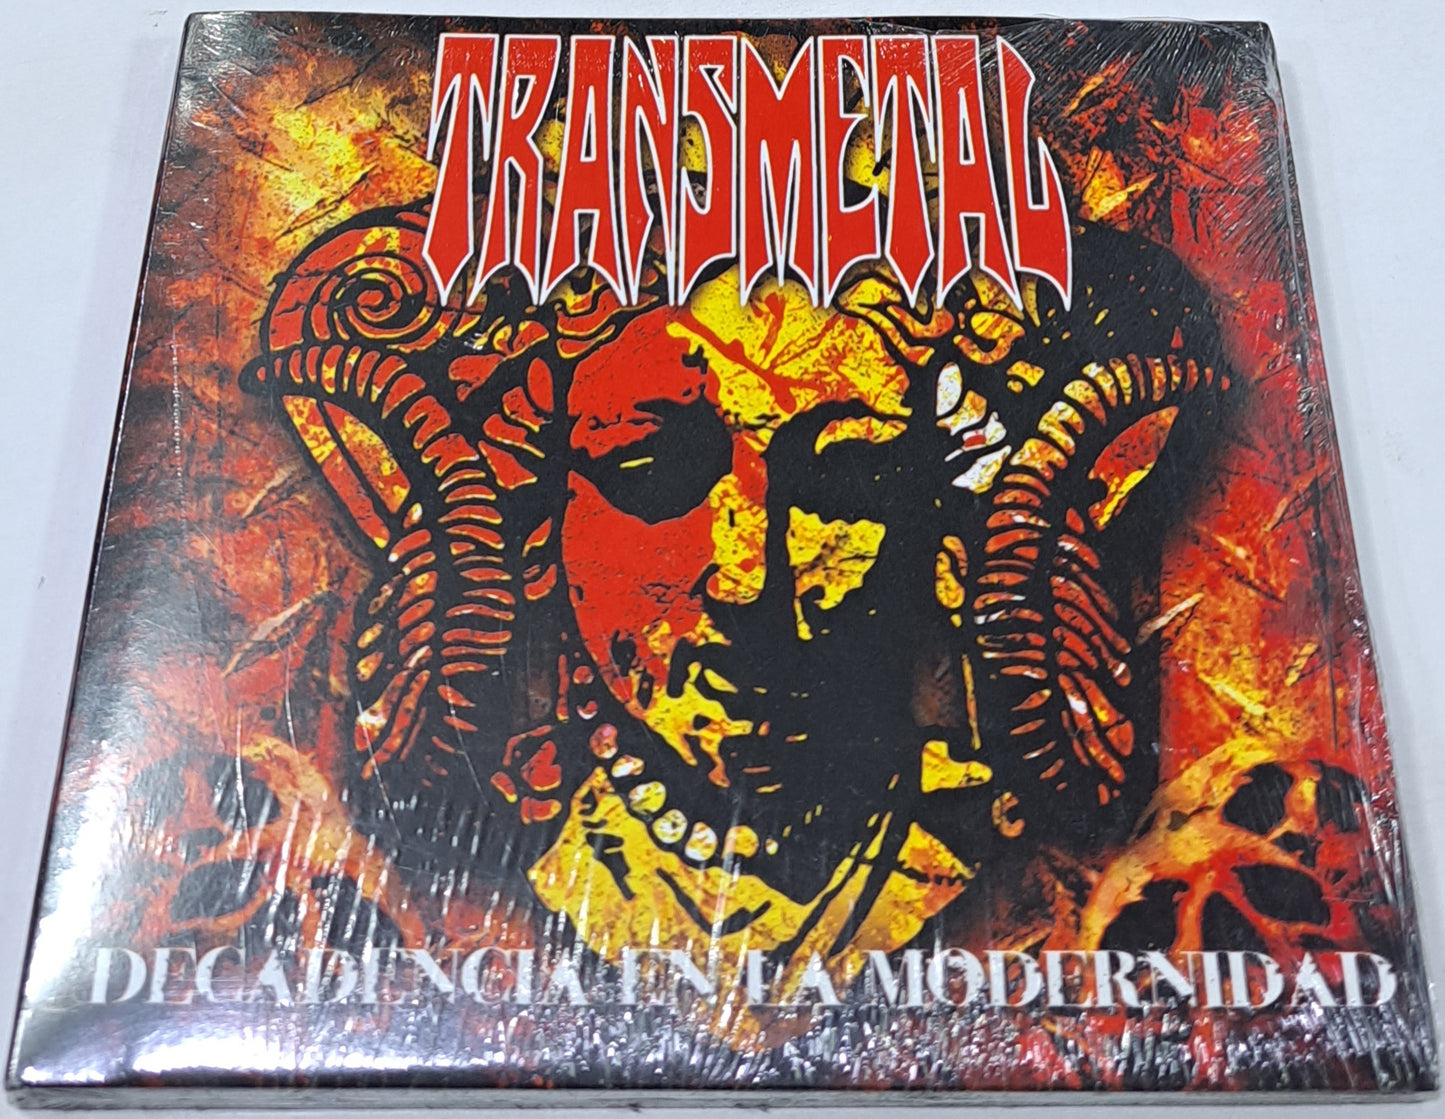 TRANSMETAL - DECADENCIA EN LA MODERNIDAD  CD